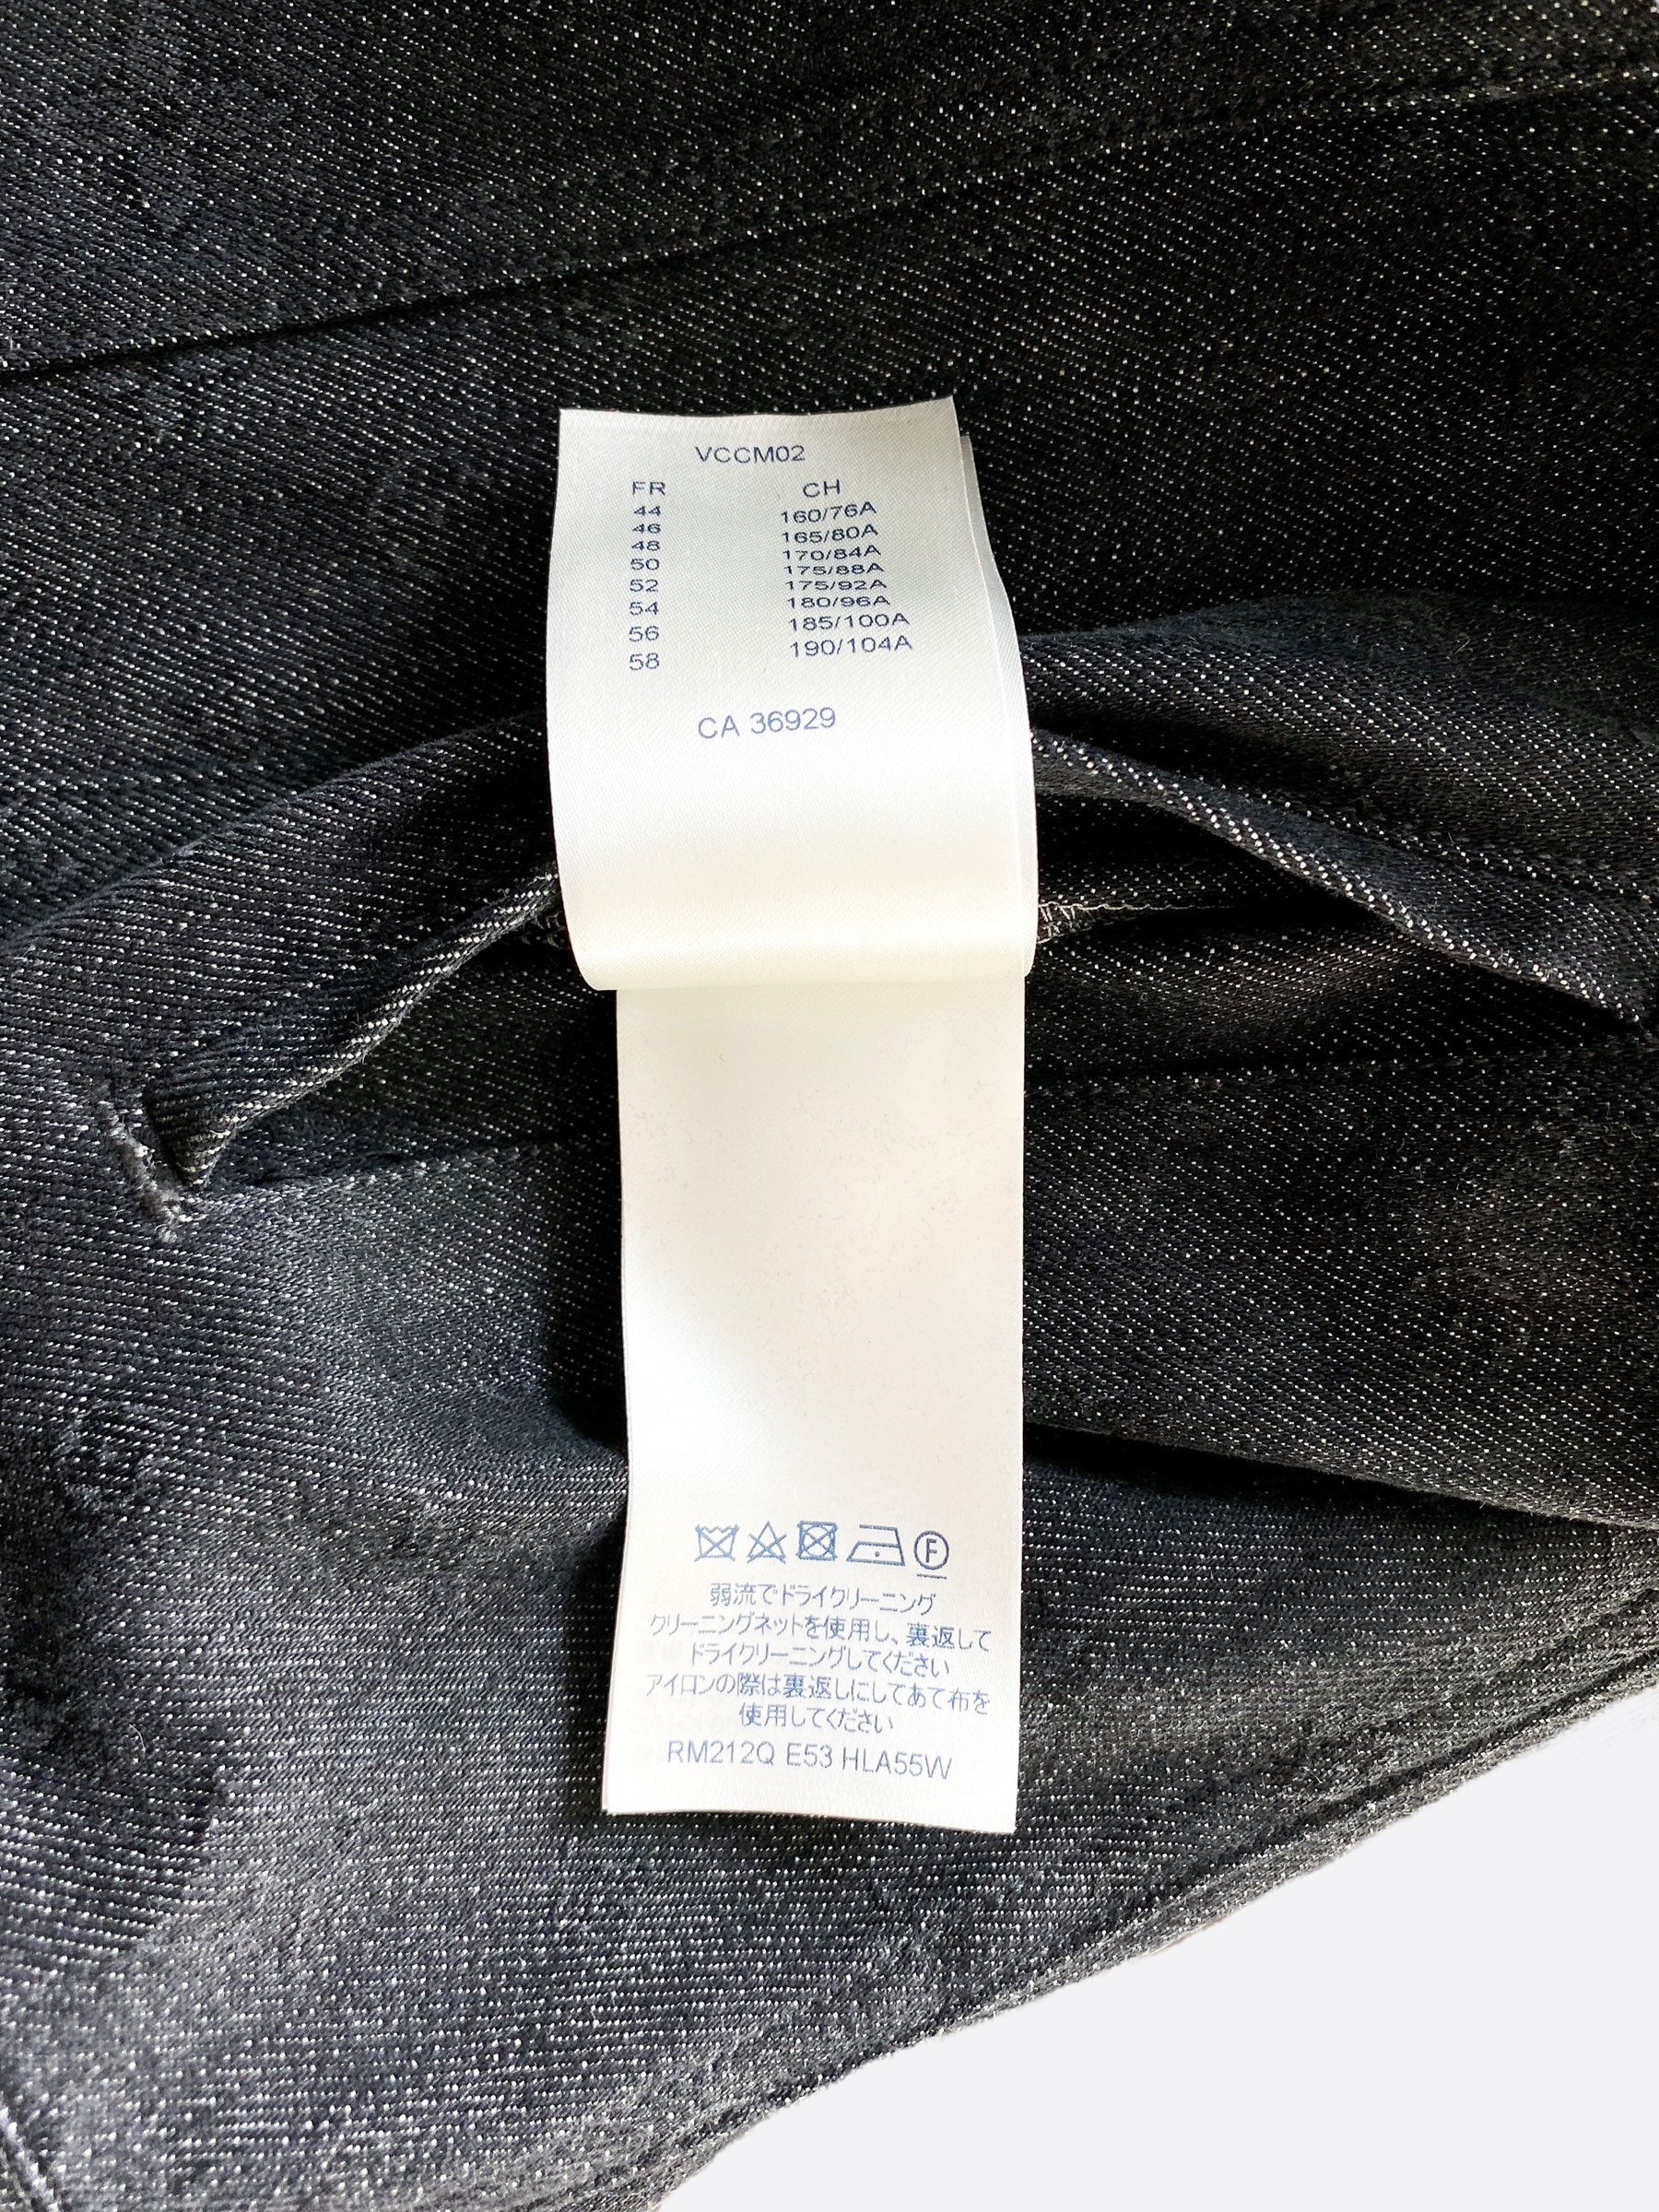 Louis Vuitton DNA Leaf Denim Jacket